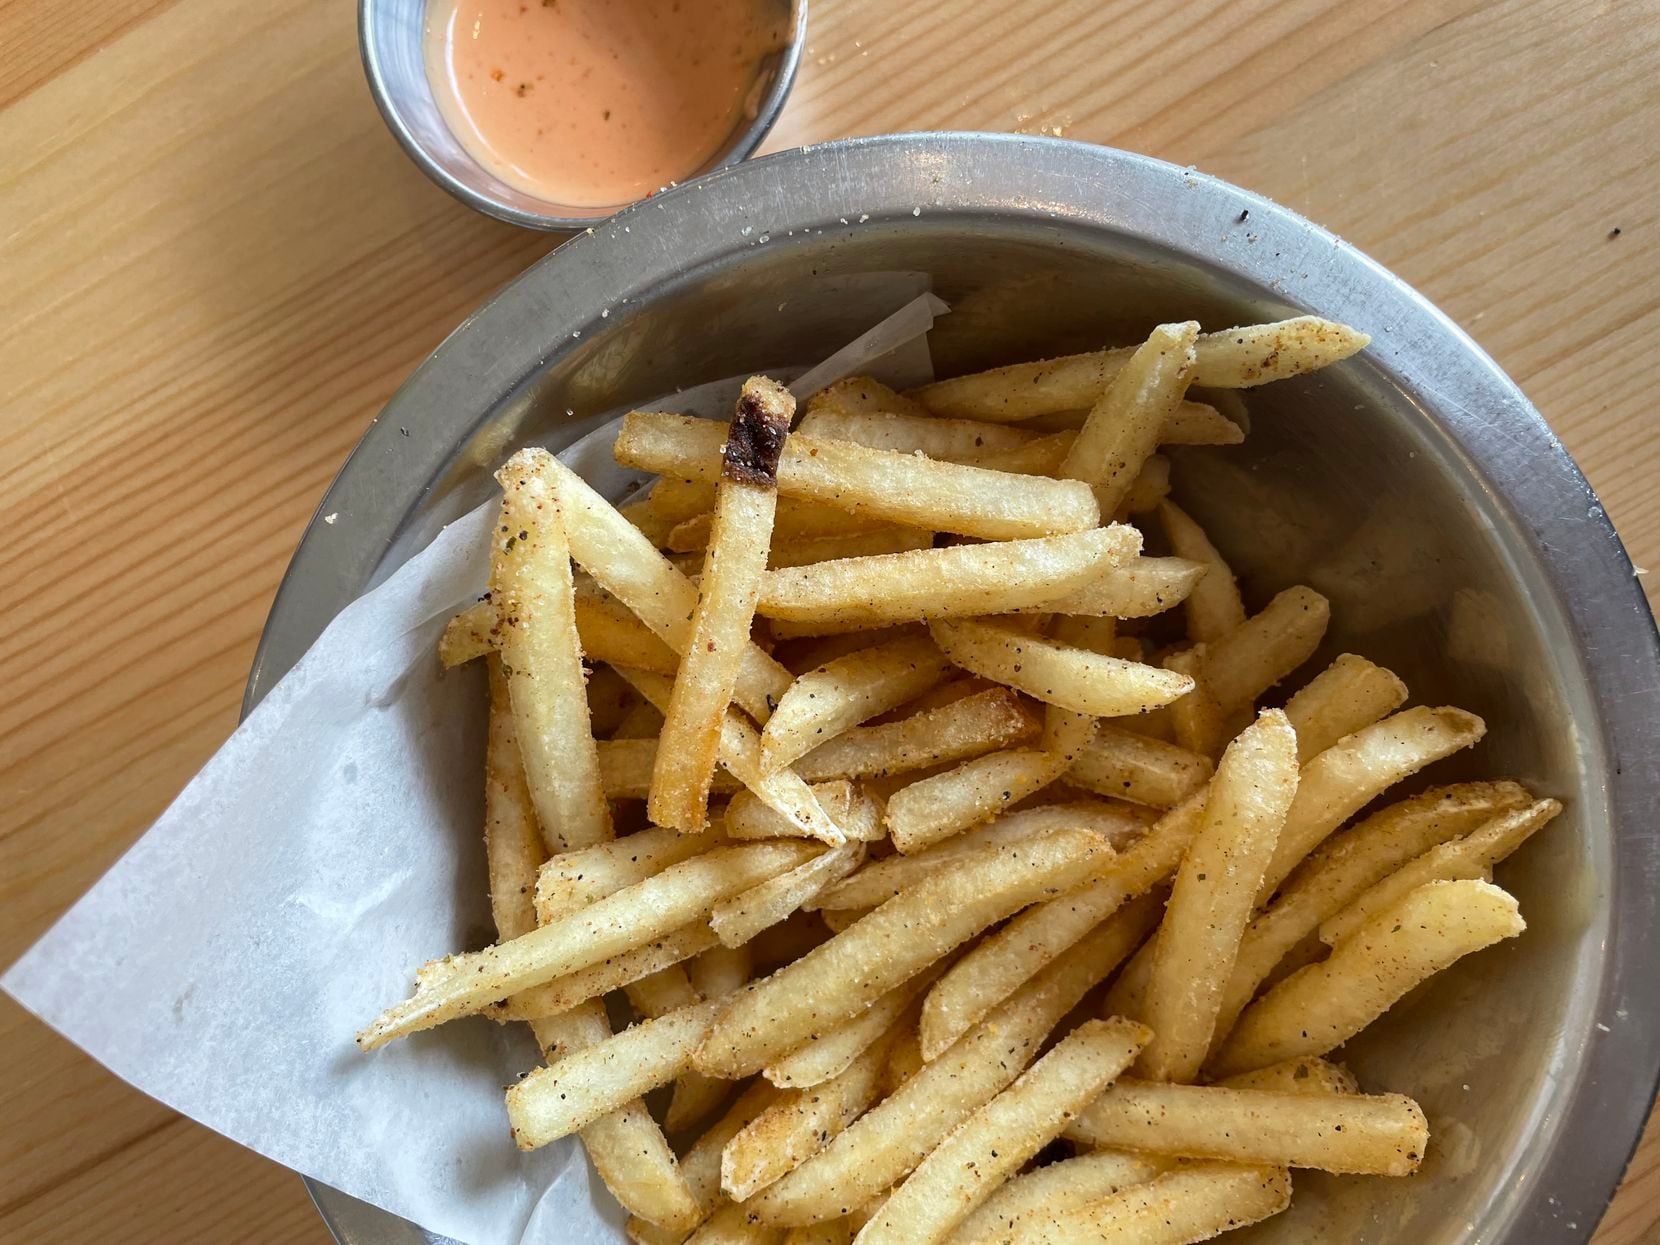 Oishii fries from Okaeri Cafe in Richardson